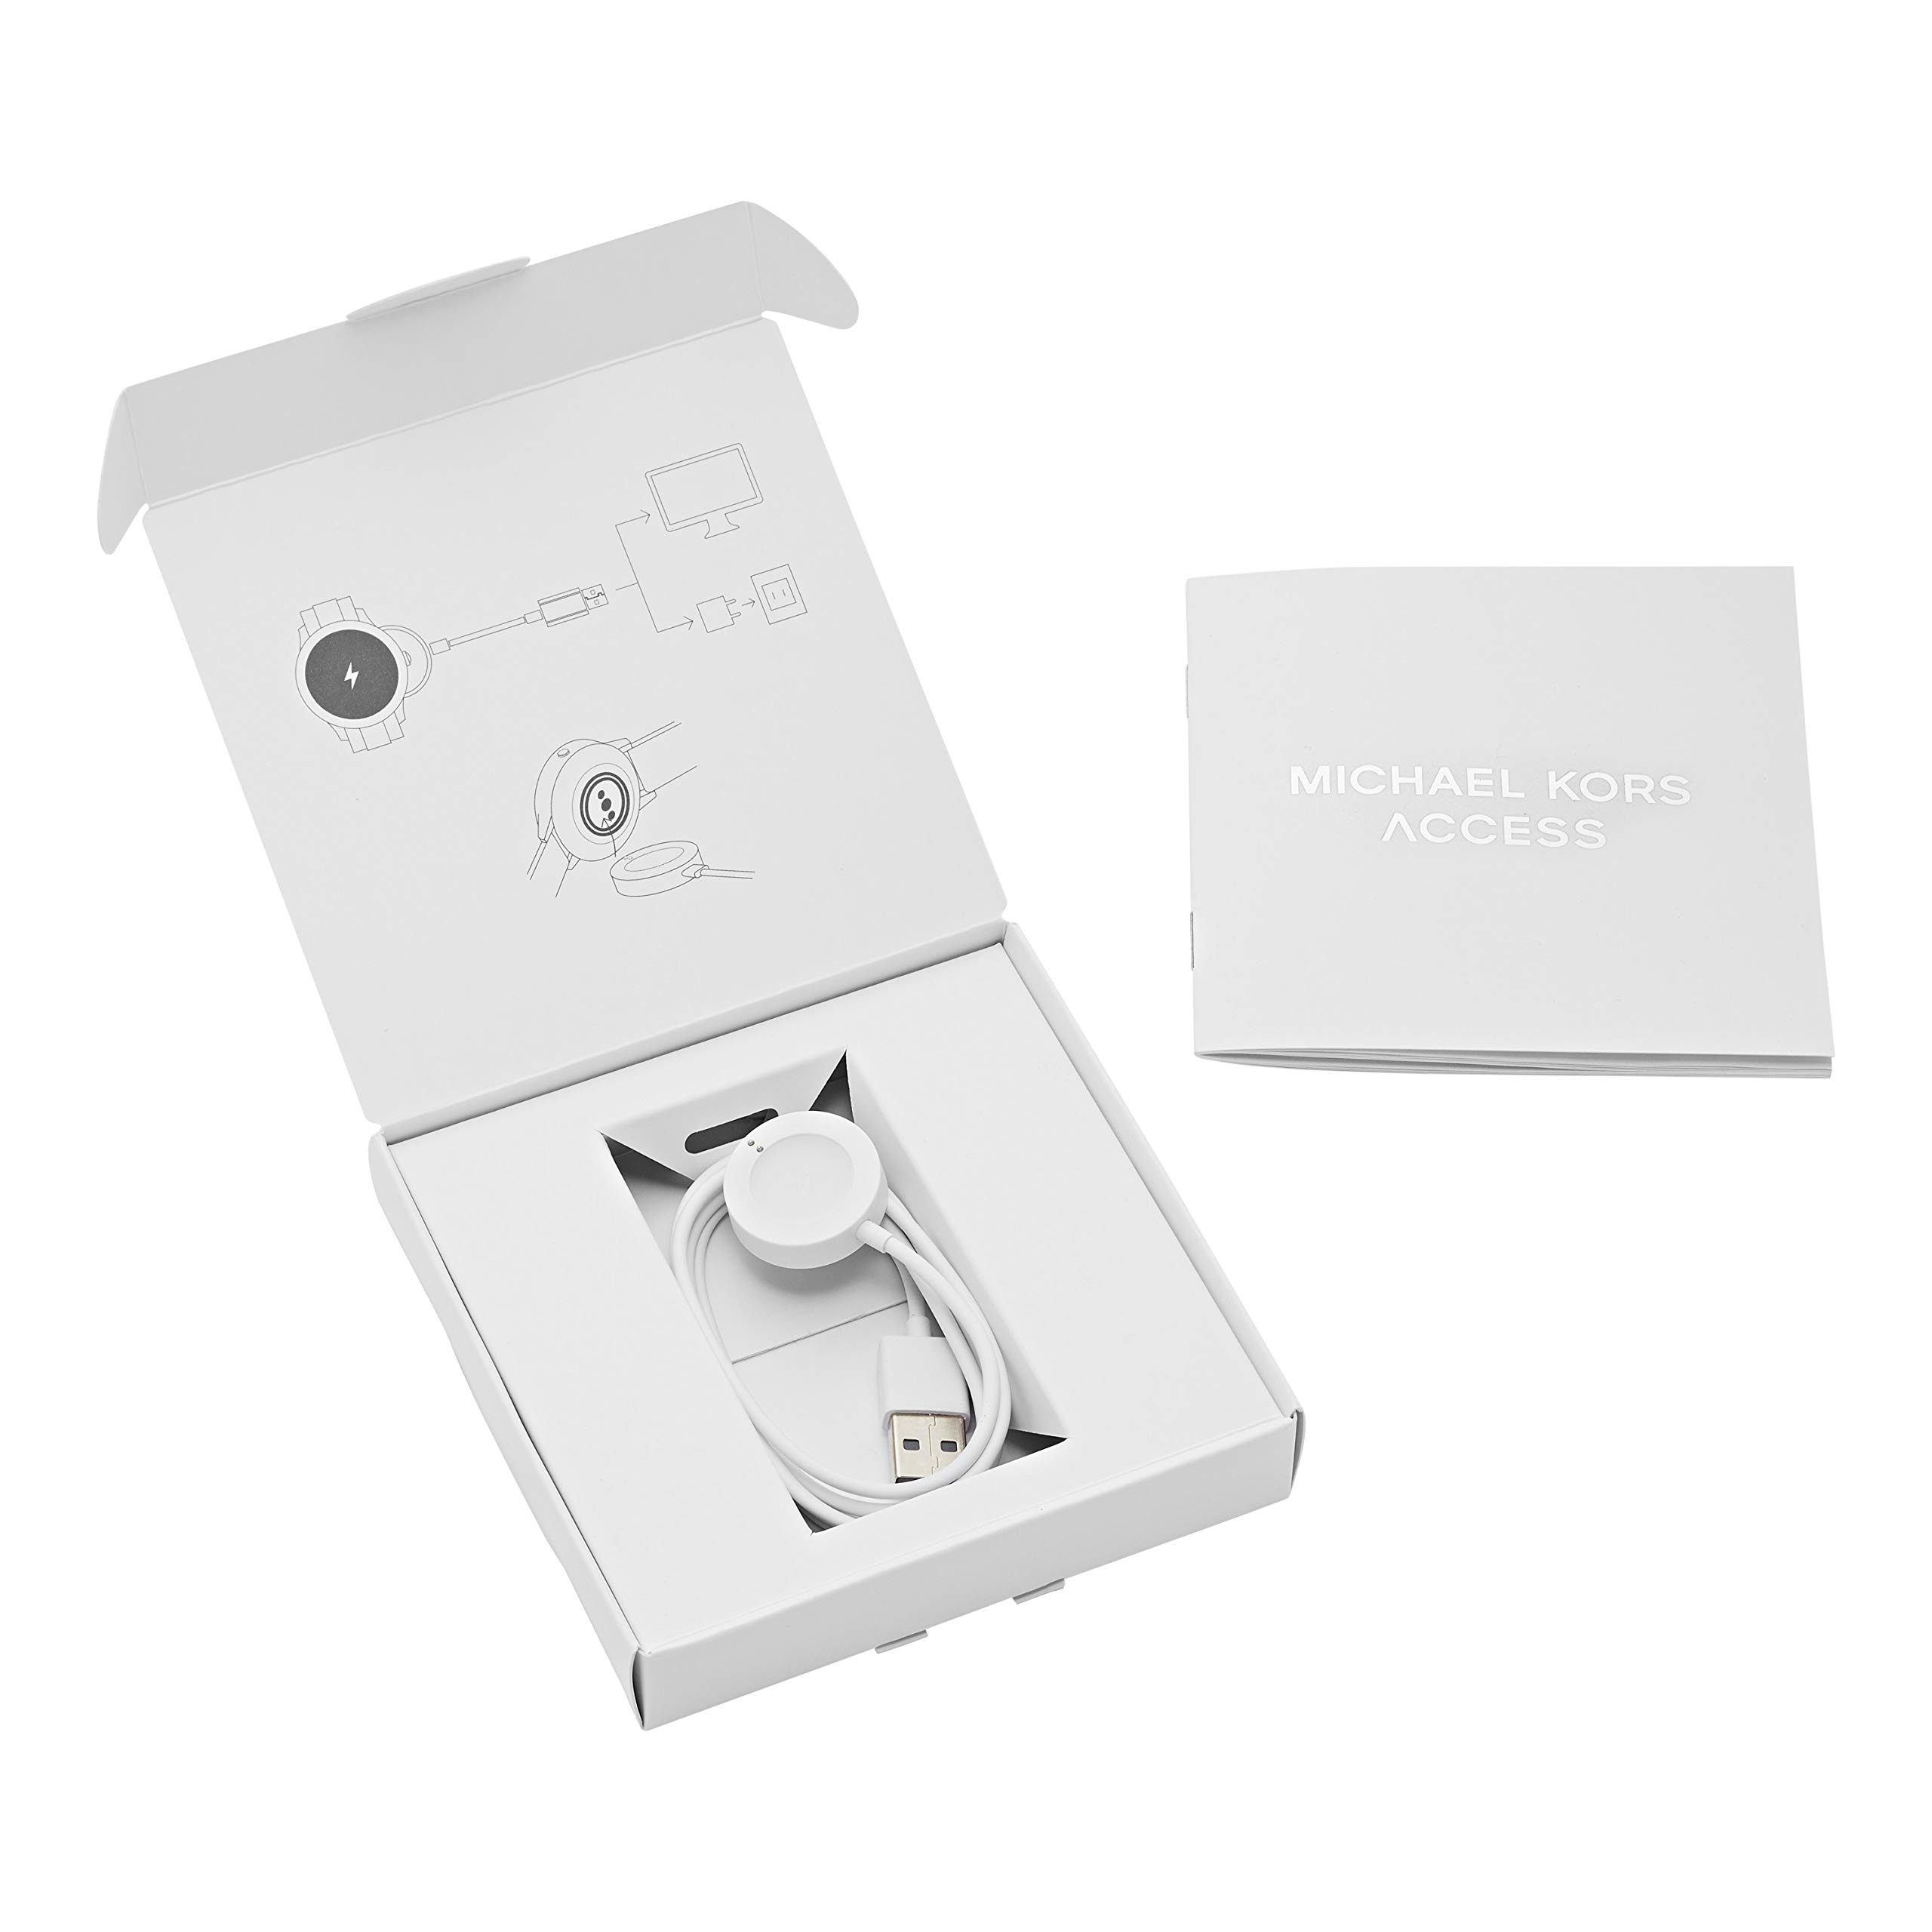 Michael Kors Access Smartwatch Charger - White (Model: MKT0002) Compatible with Gen 4 MKGO, Gen 4 Runway, Gen 4 Sofie, Gen 5 Lexington and Gen 5 Bradshaw